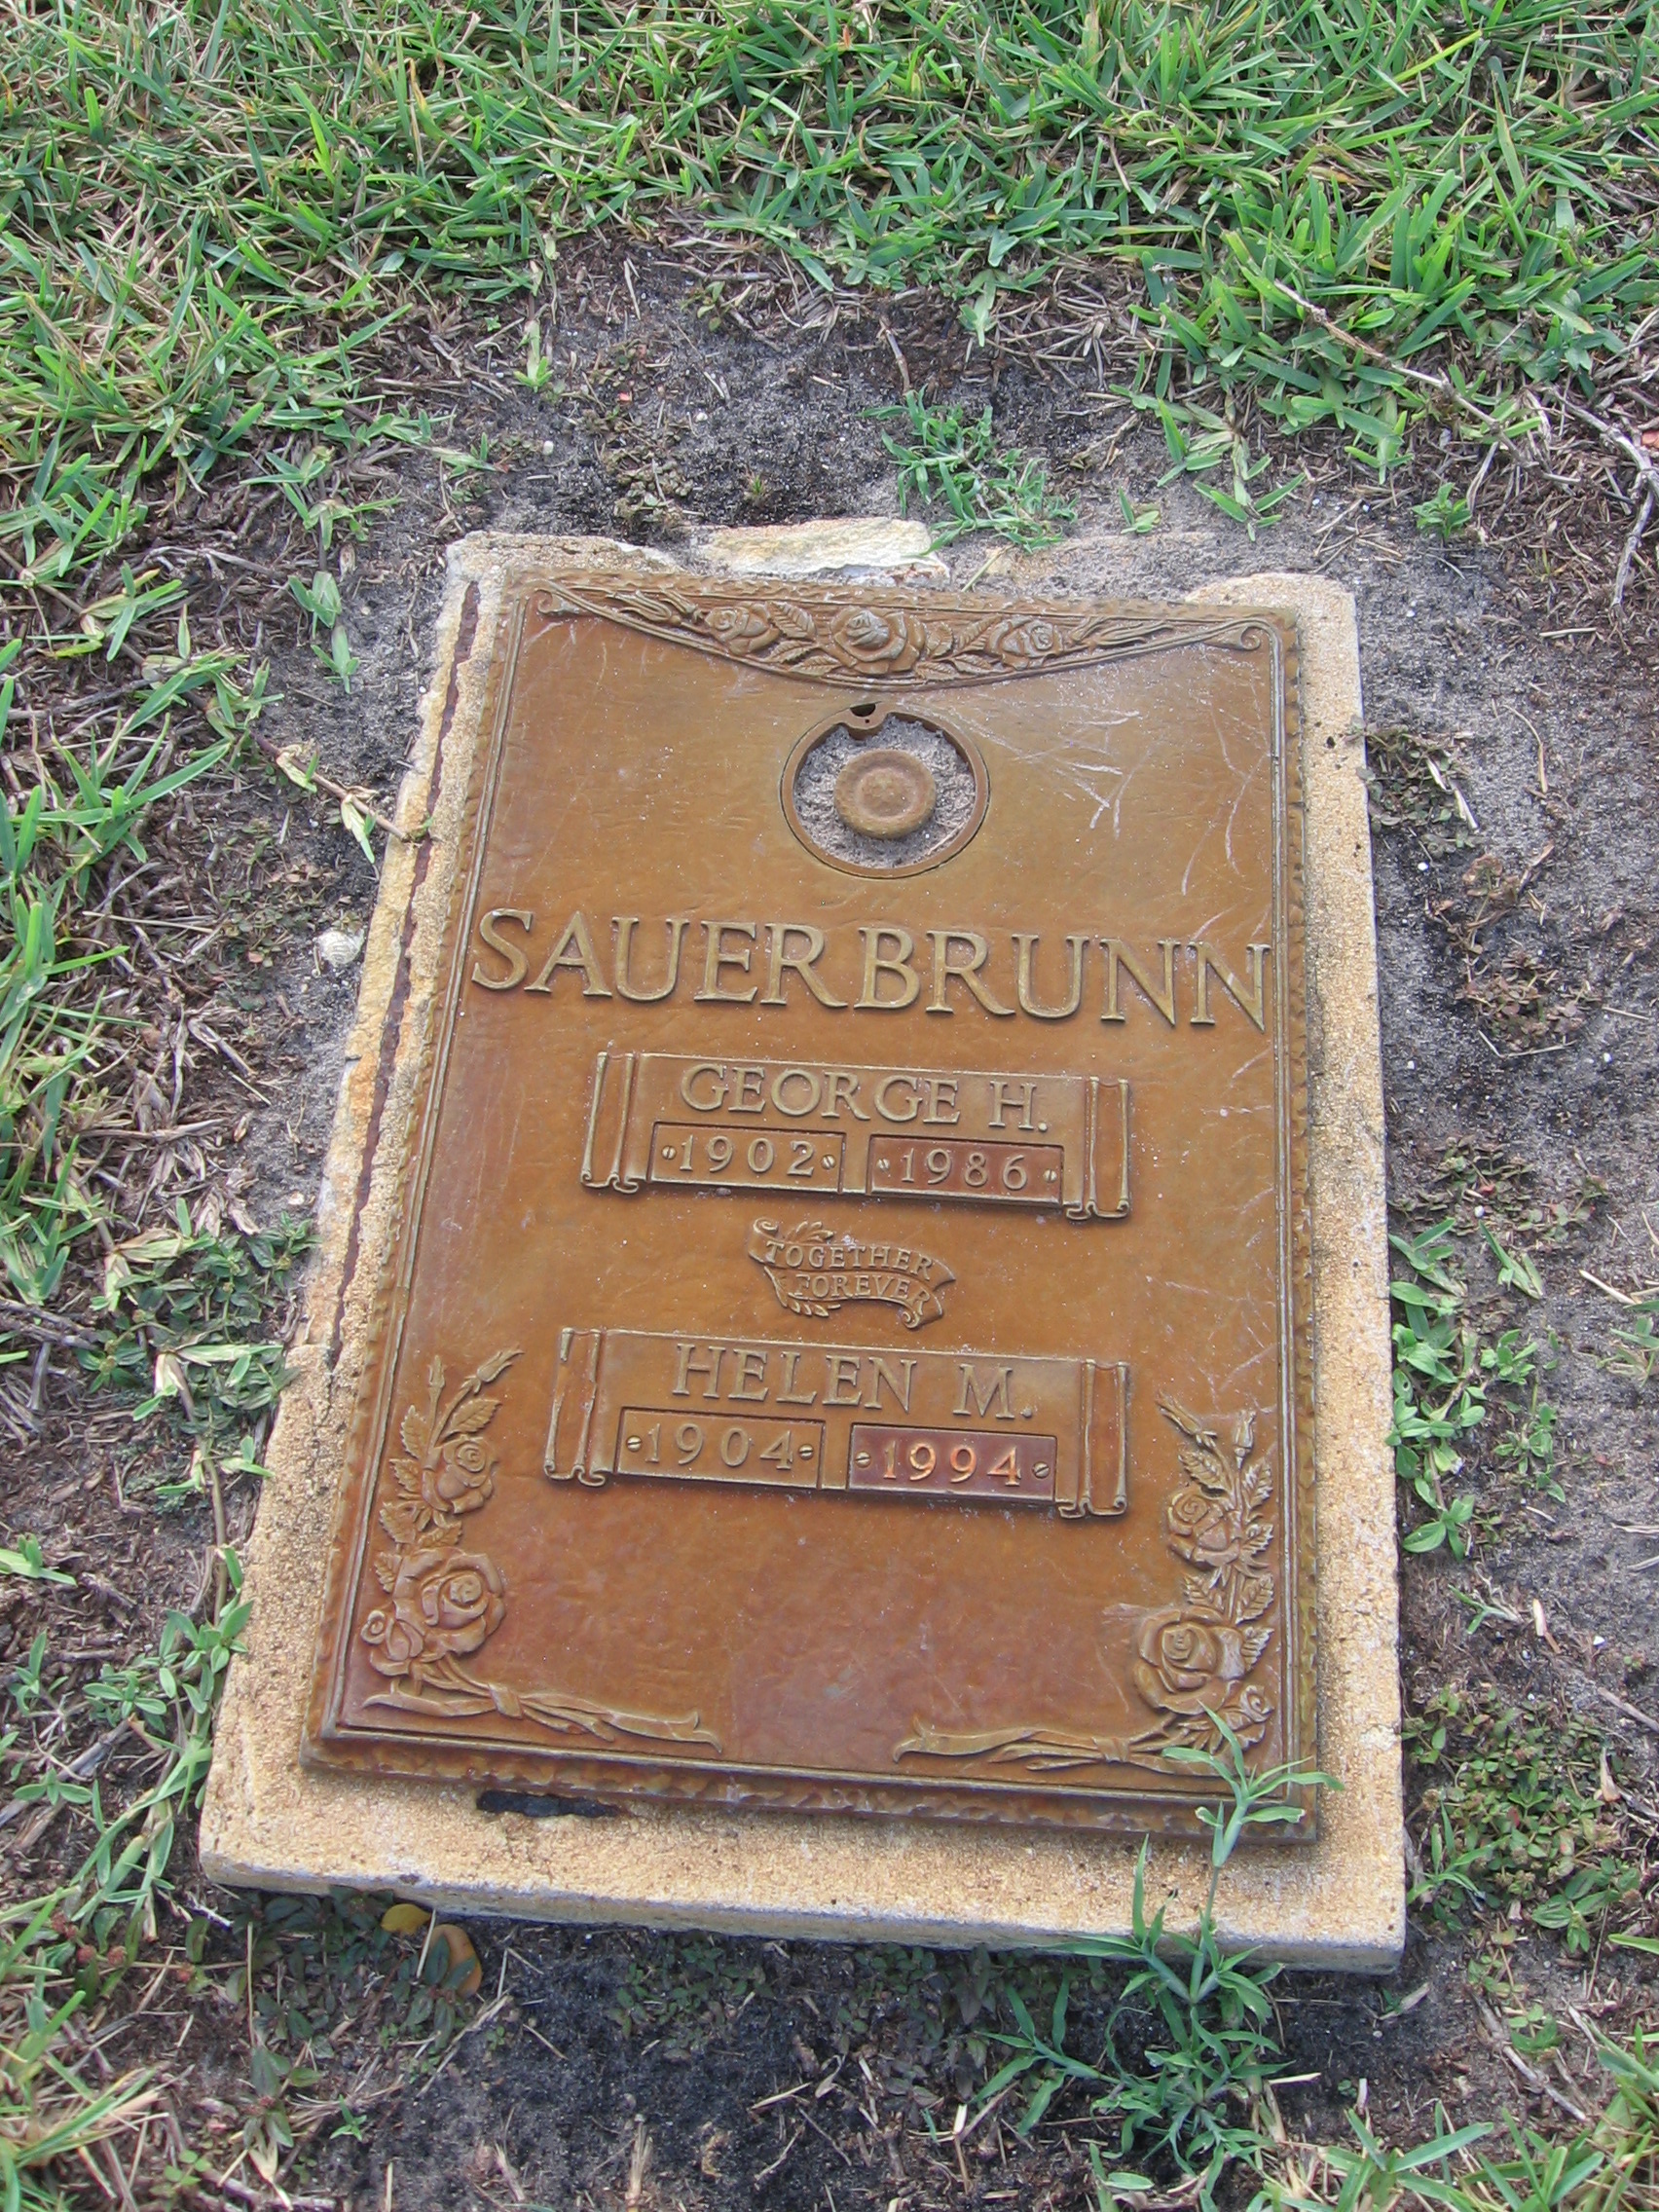 Helen M Sauerbrunn